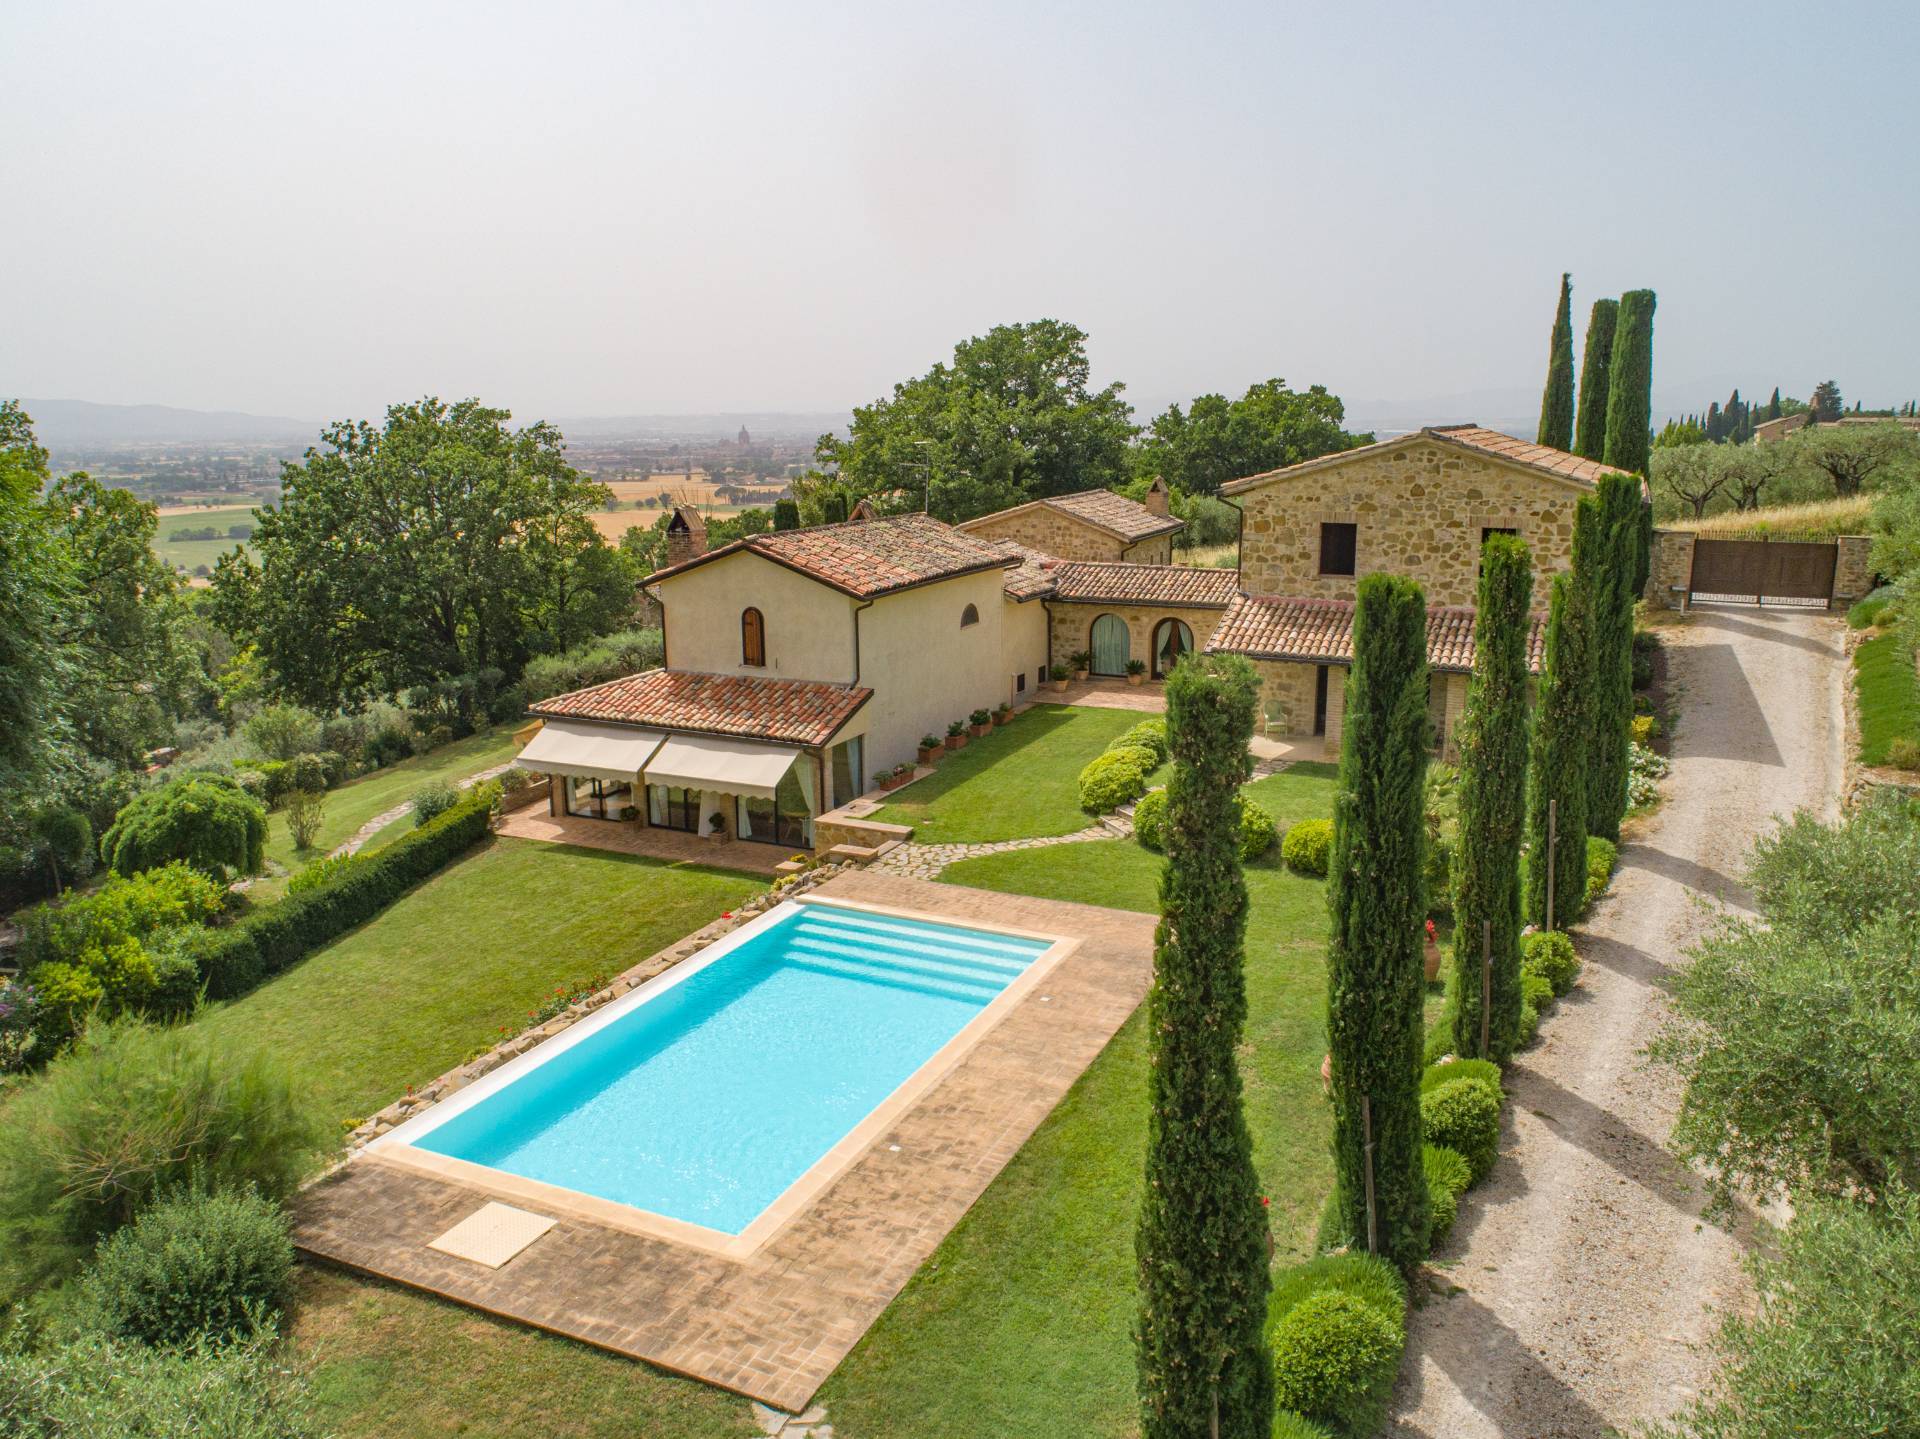 Villa in vendita a Assisi - Zona: Assisi centro